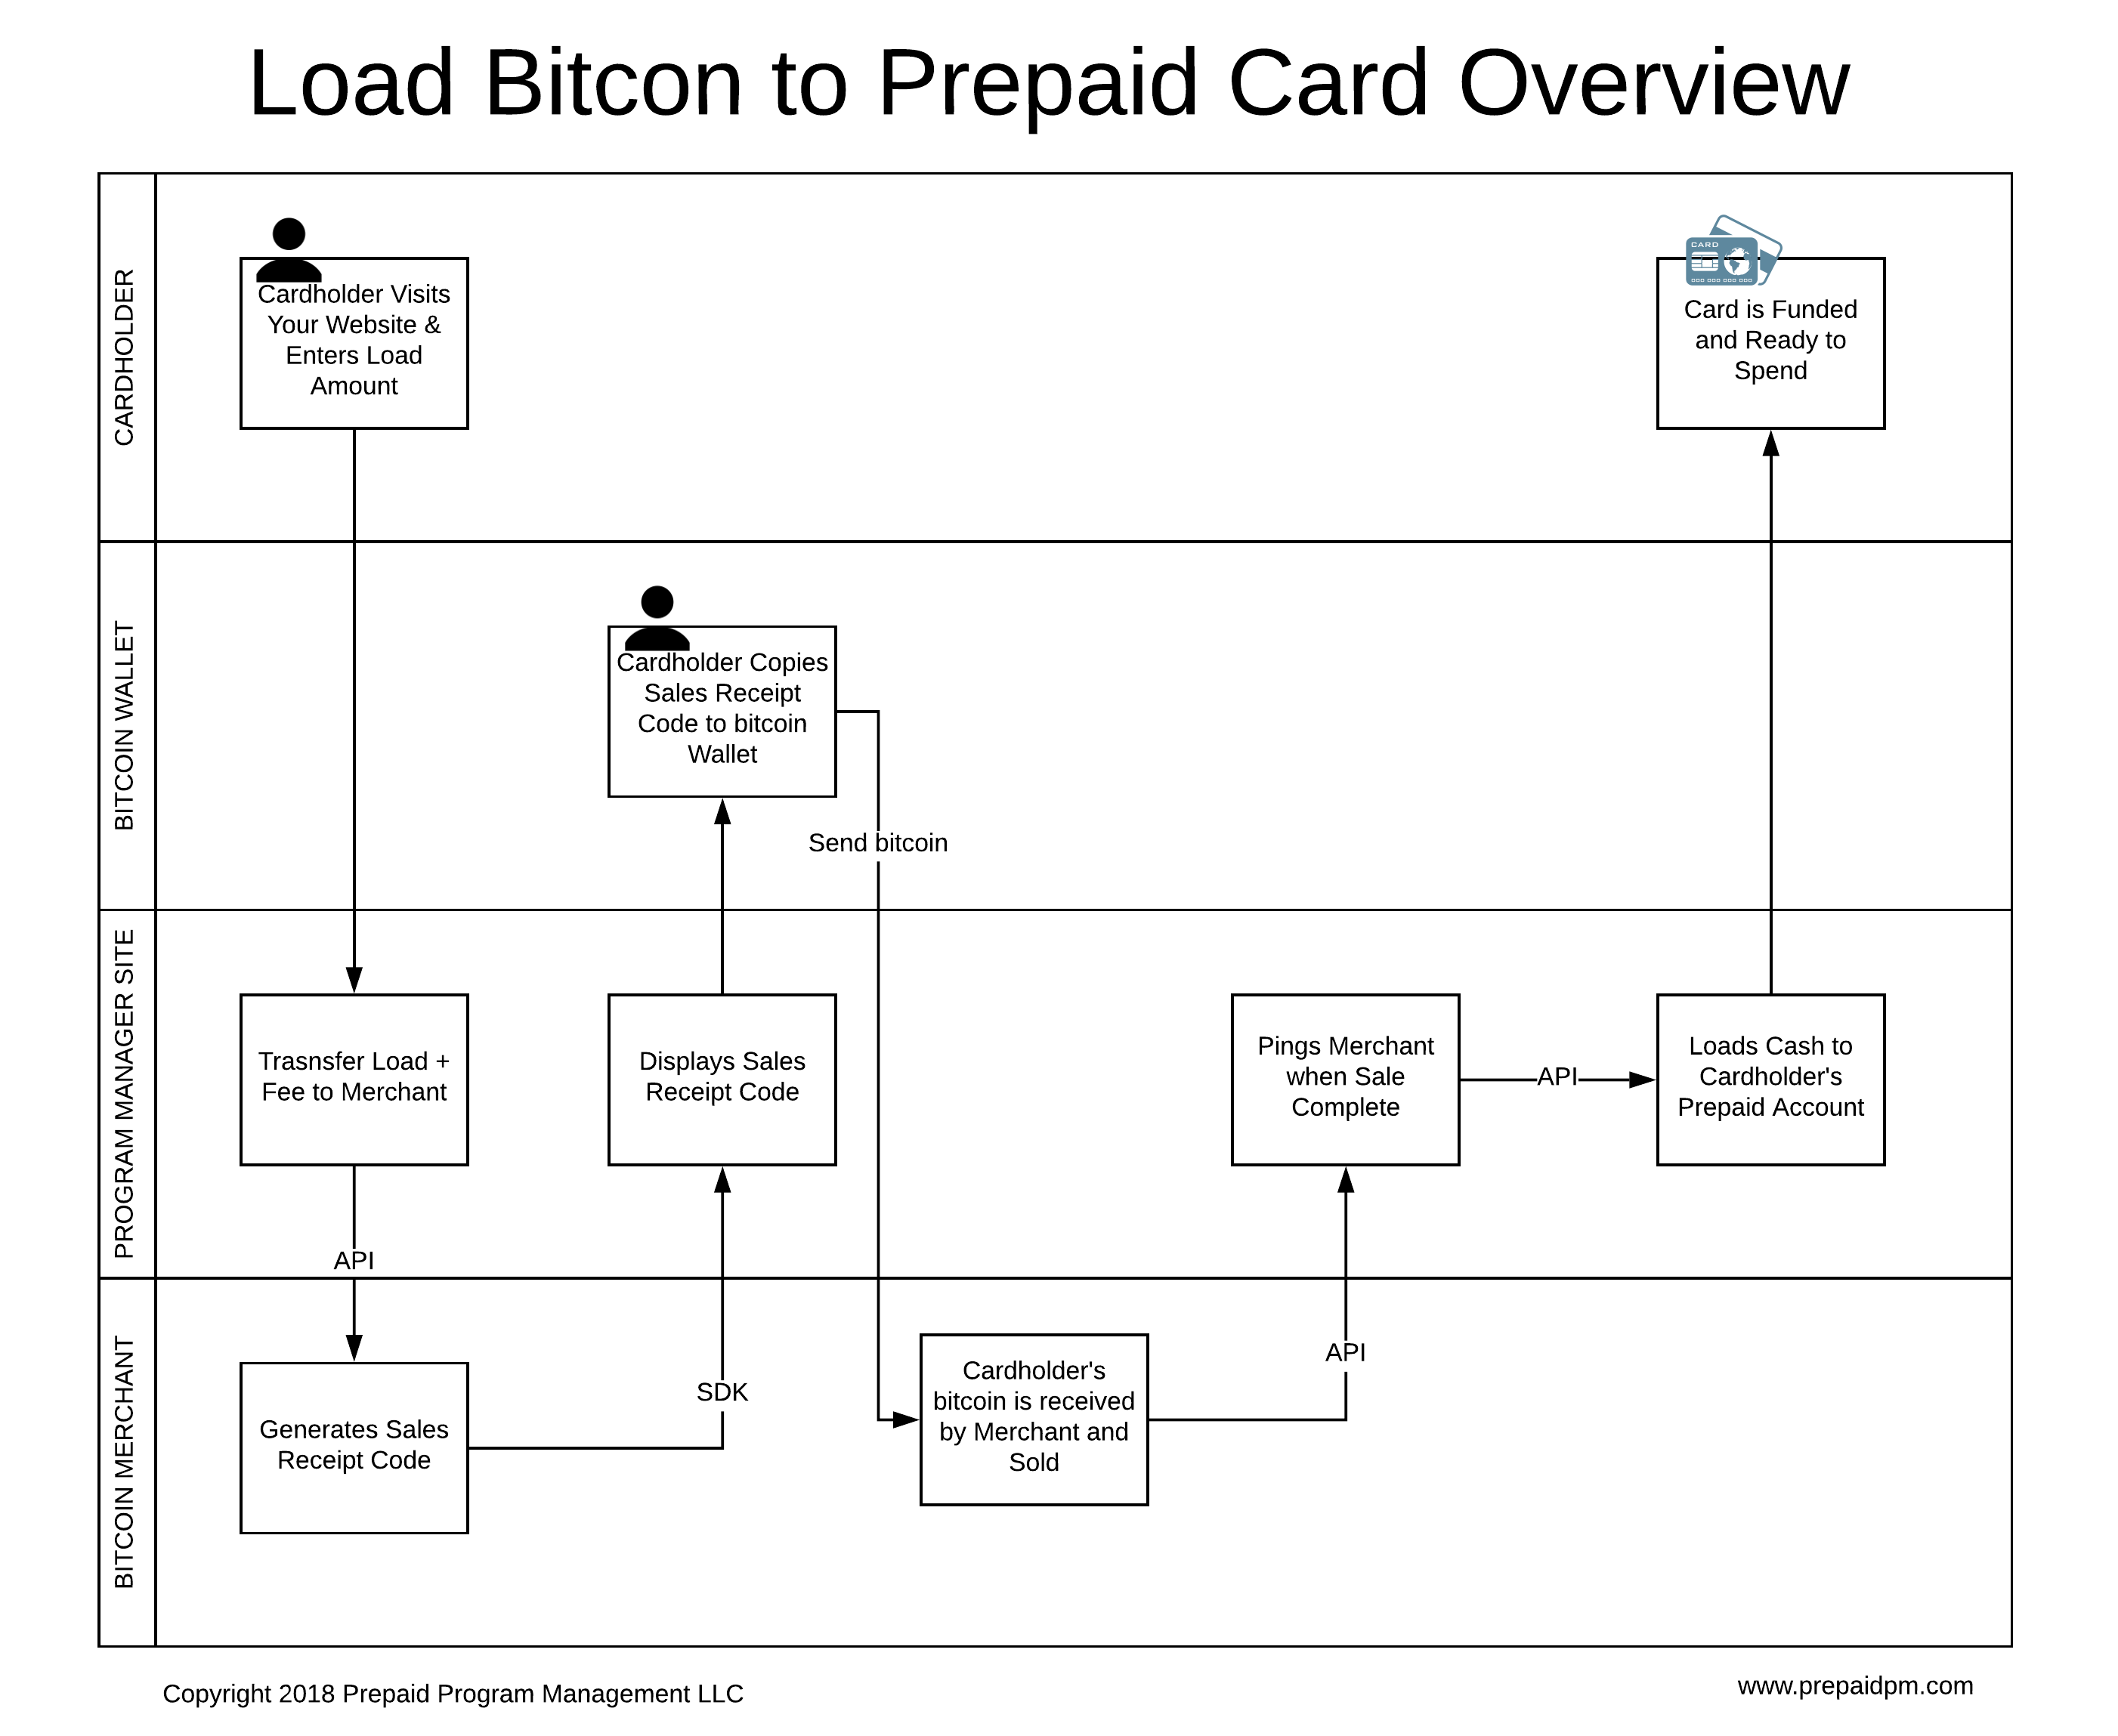 Load Bitcoin to a Prepaid card